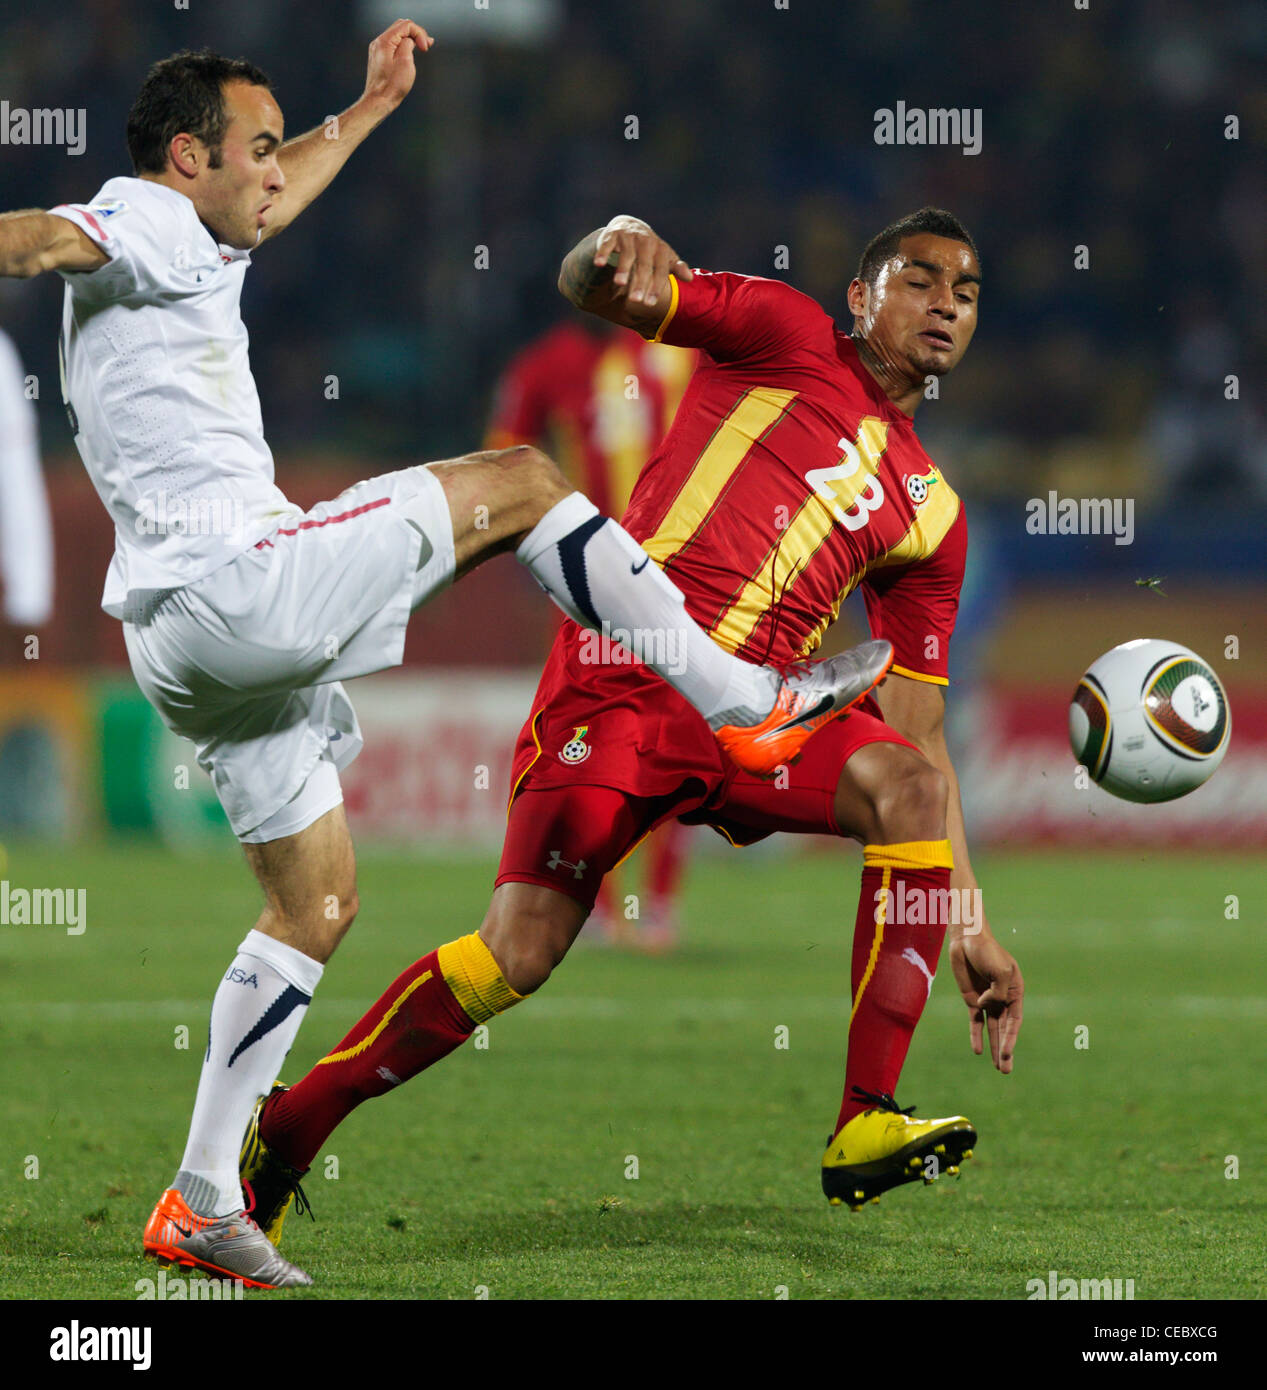 Landon Donovan von USA (L) kickt den Ball vor Kevin Prince Boateng der Ghana (R) während eines WM-Spiels. Stockfoto